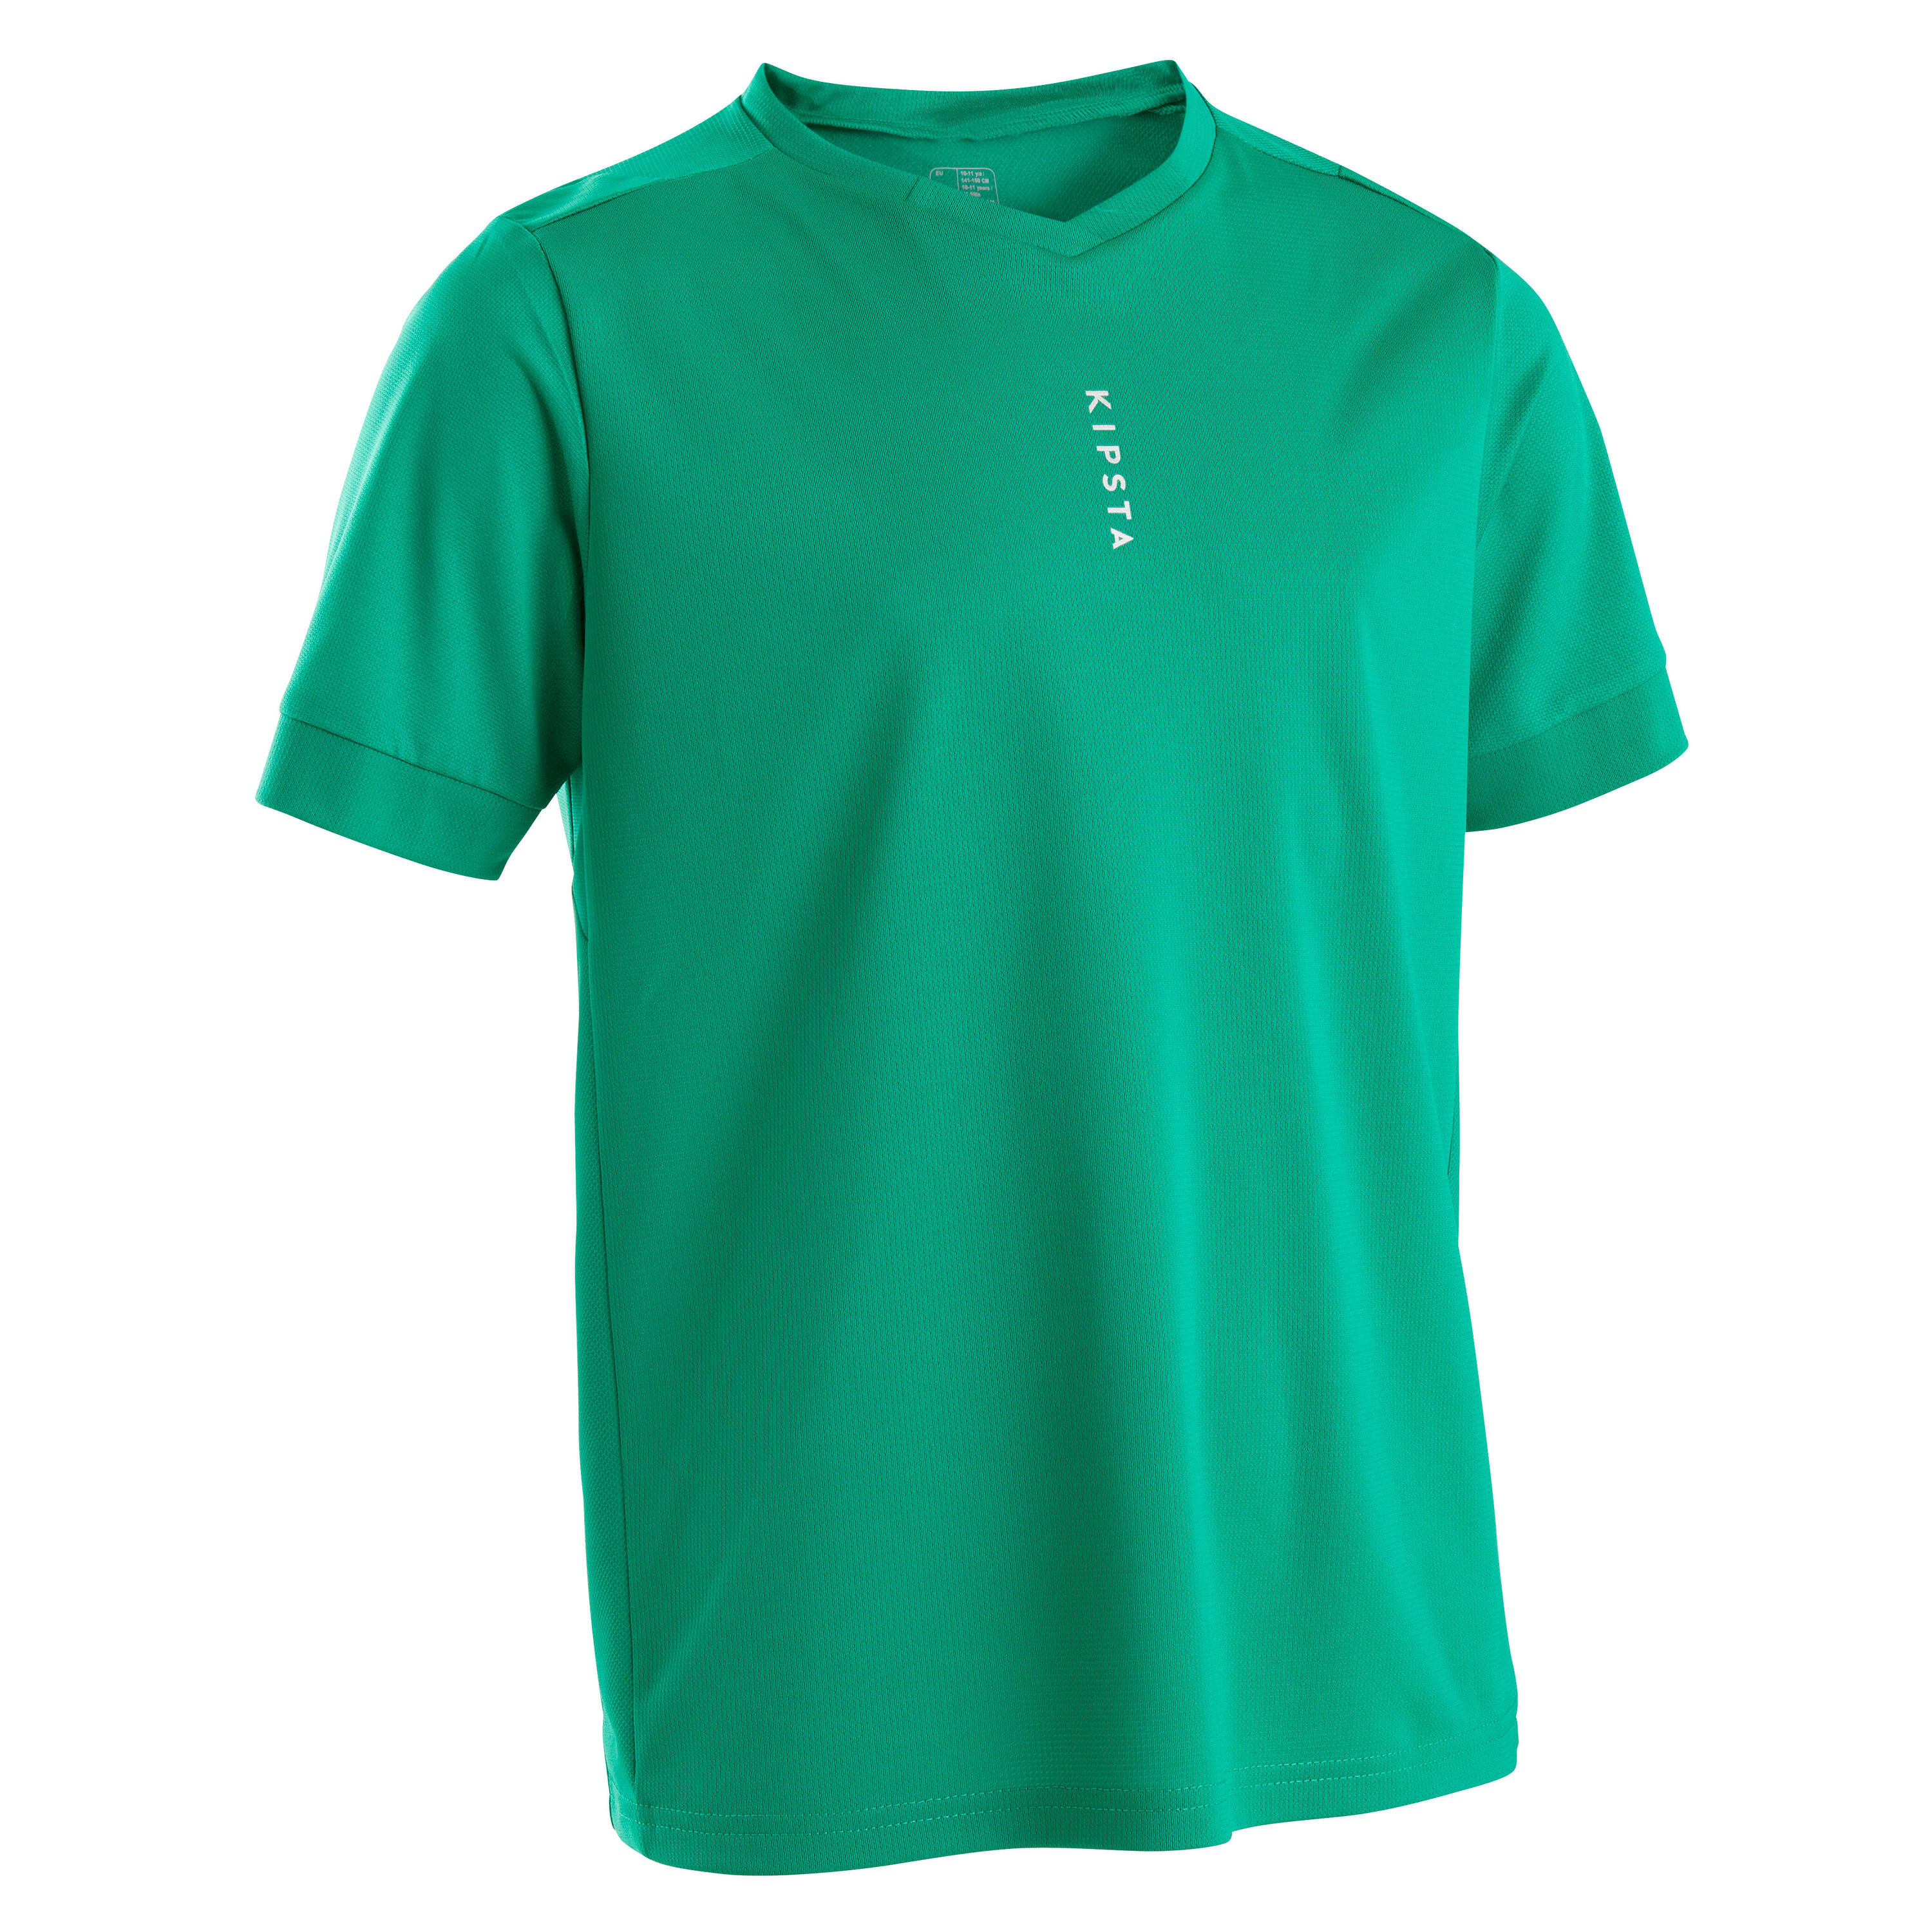 Kids' Short-Sleeved Football Shirt F500 - Plain Green 1/4